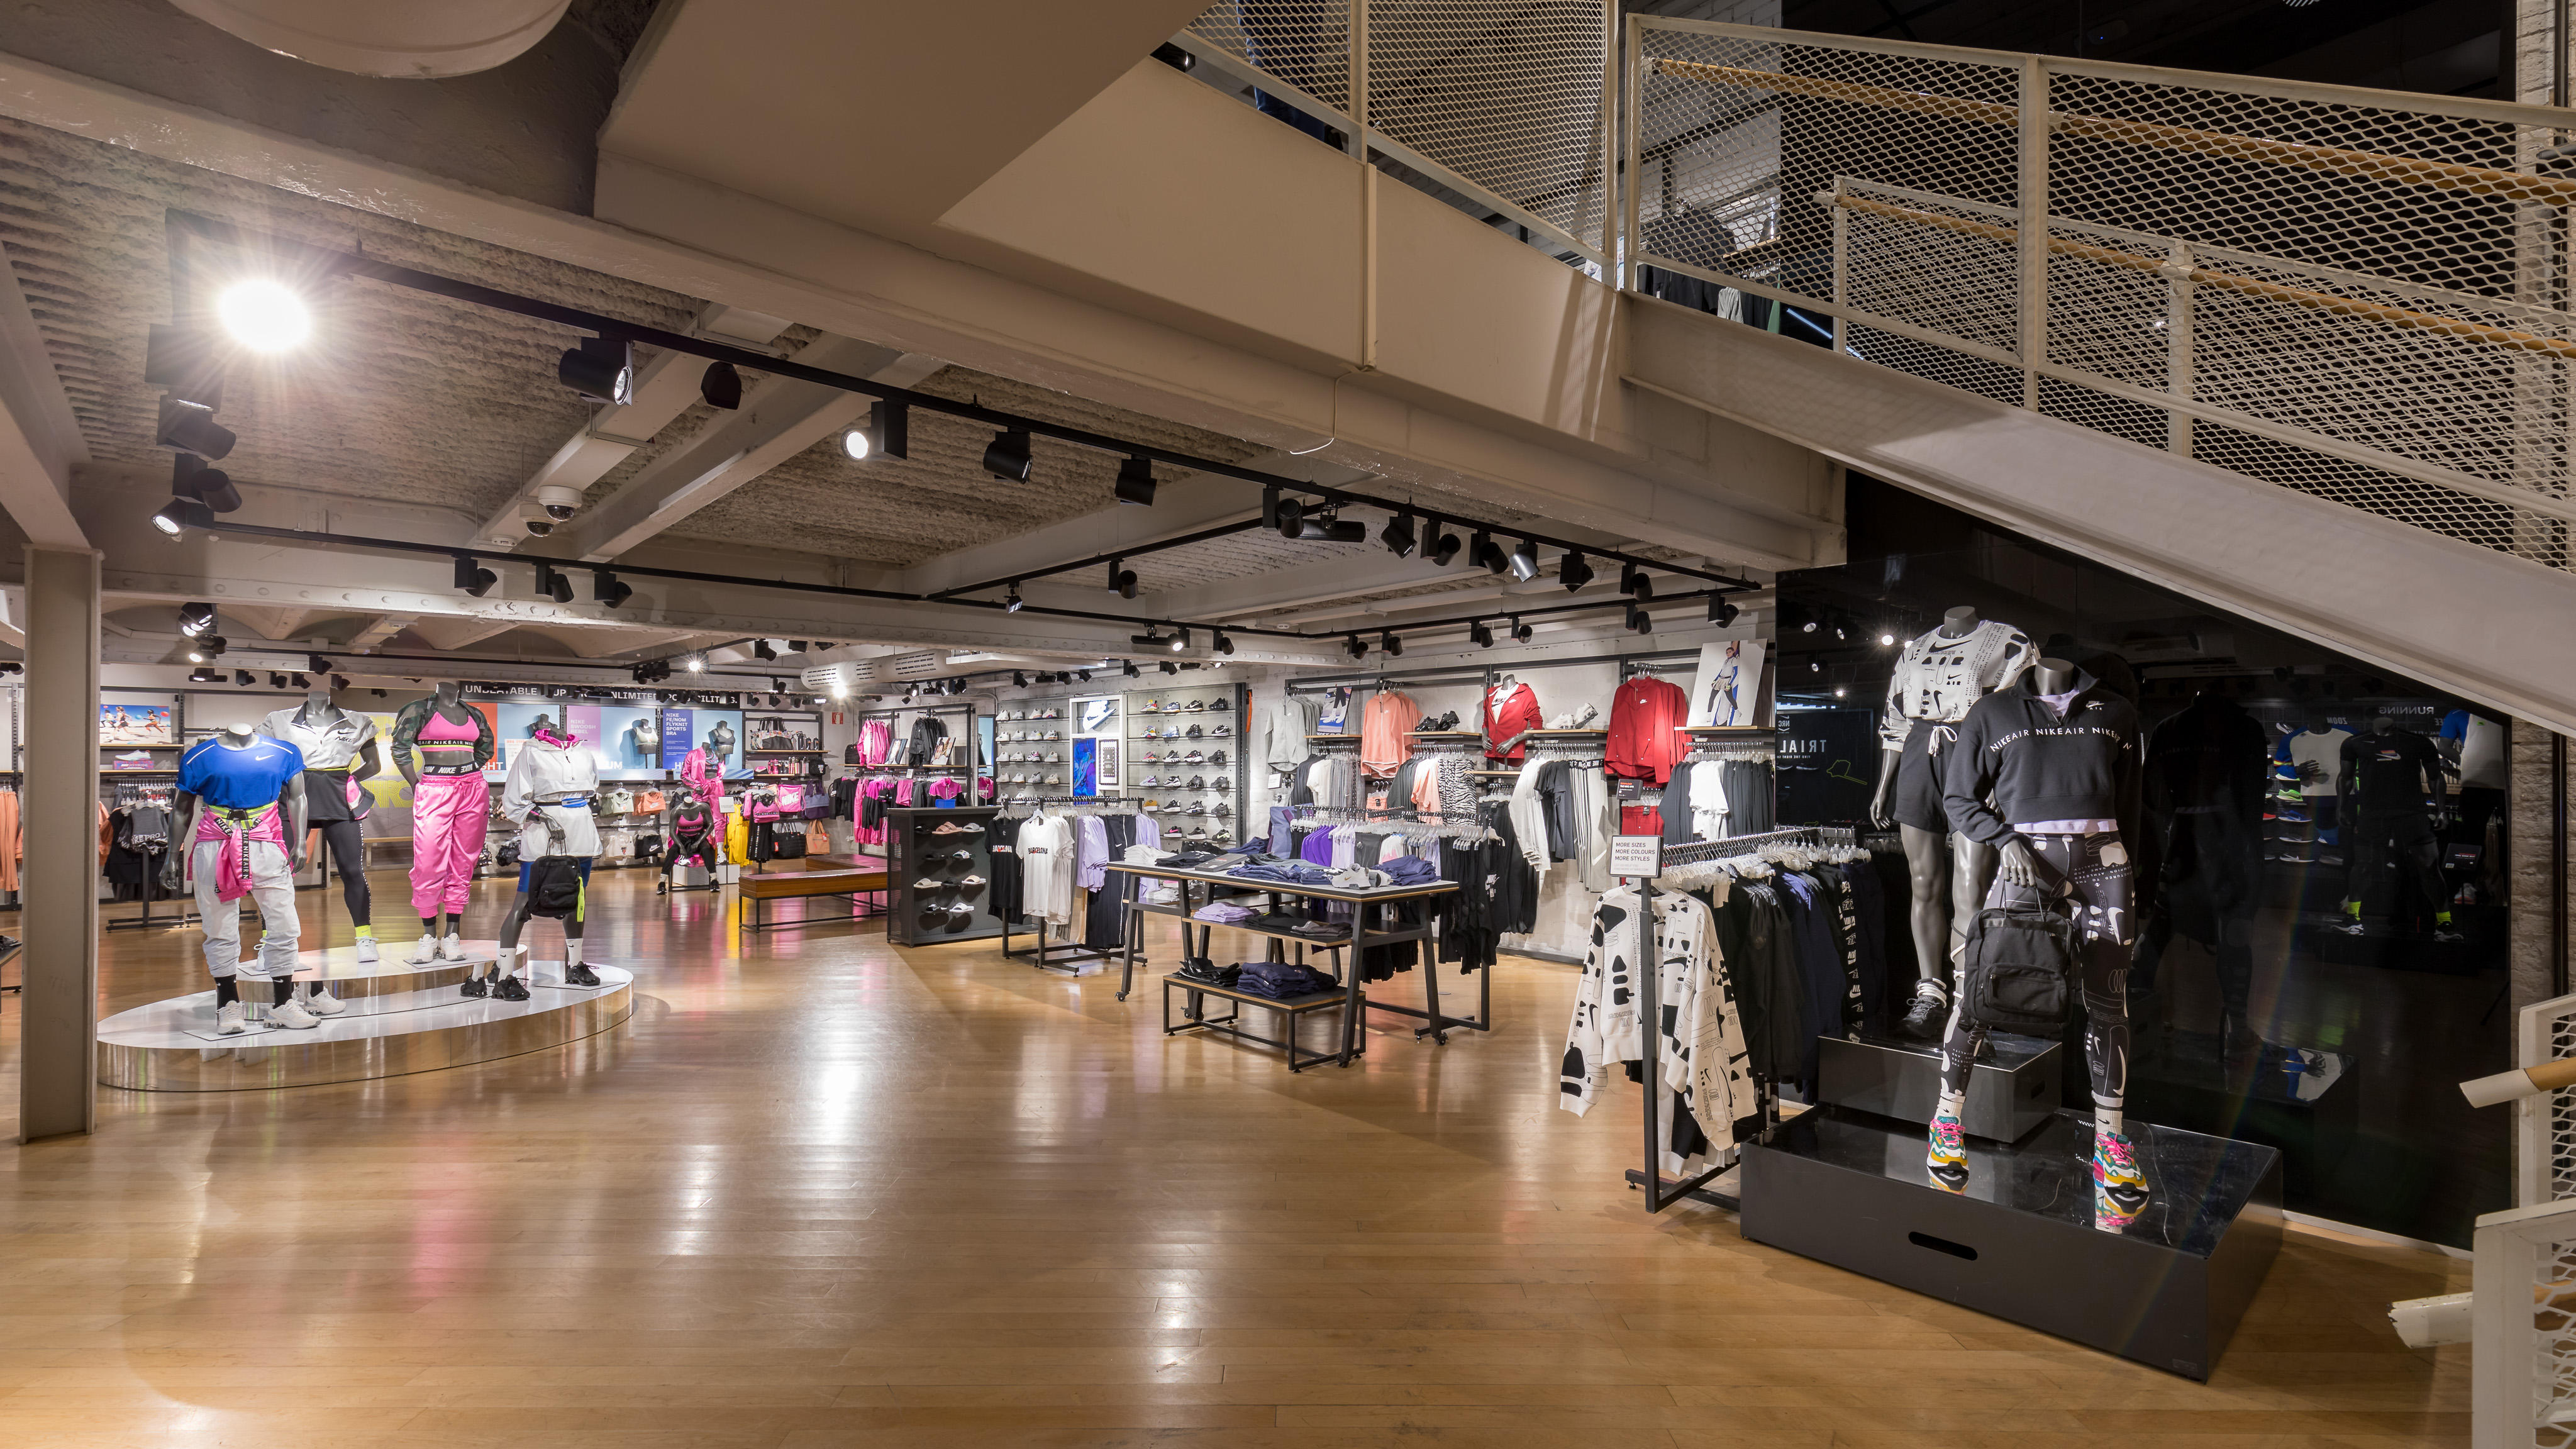 Nike Store - Las Ramblas - Sports Loisirs: Articles Et Vêtements (Détail Et Accessoires) à Barcelona (adresse, horaires, avis, TÉL: 933015...) - Infobel